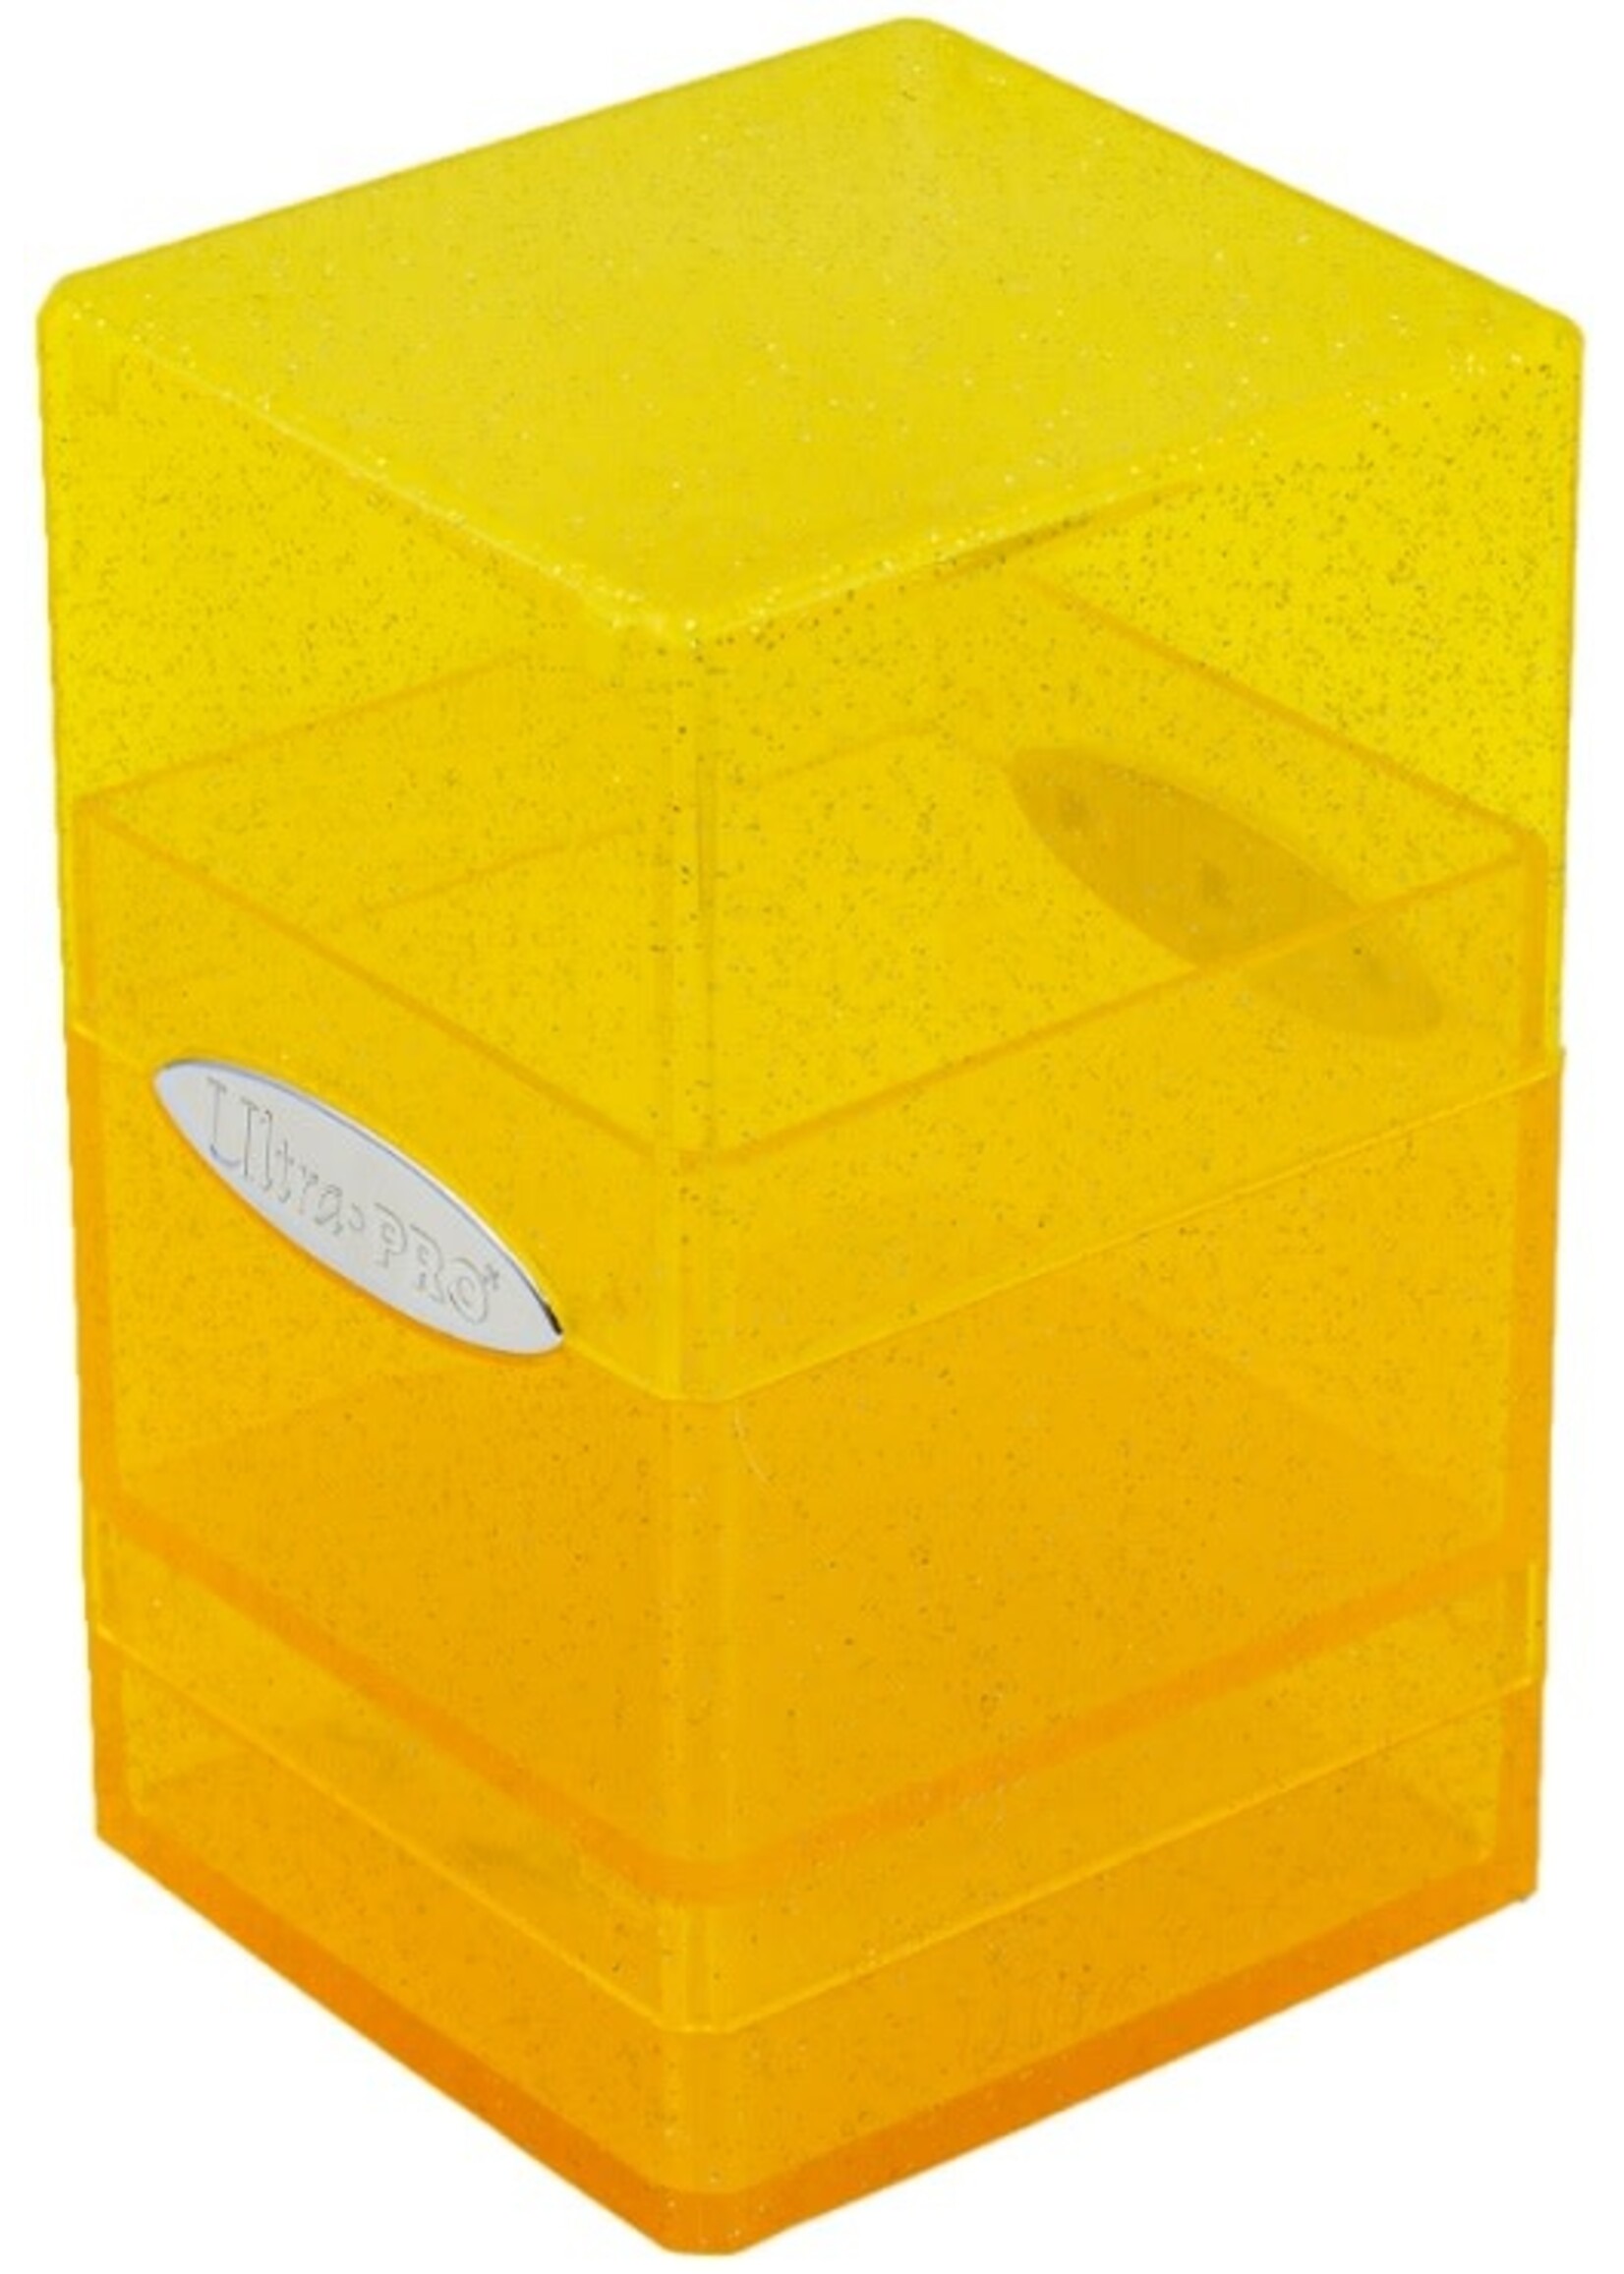 Ultra Pro Satin Tower Deck Box: Glitter Yellow